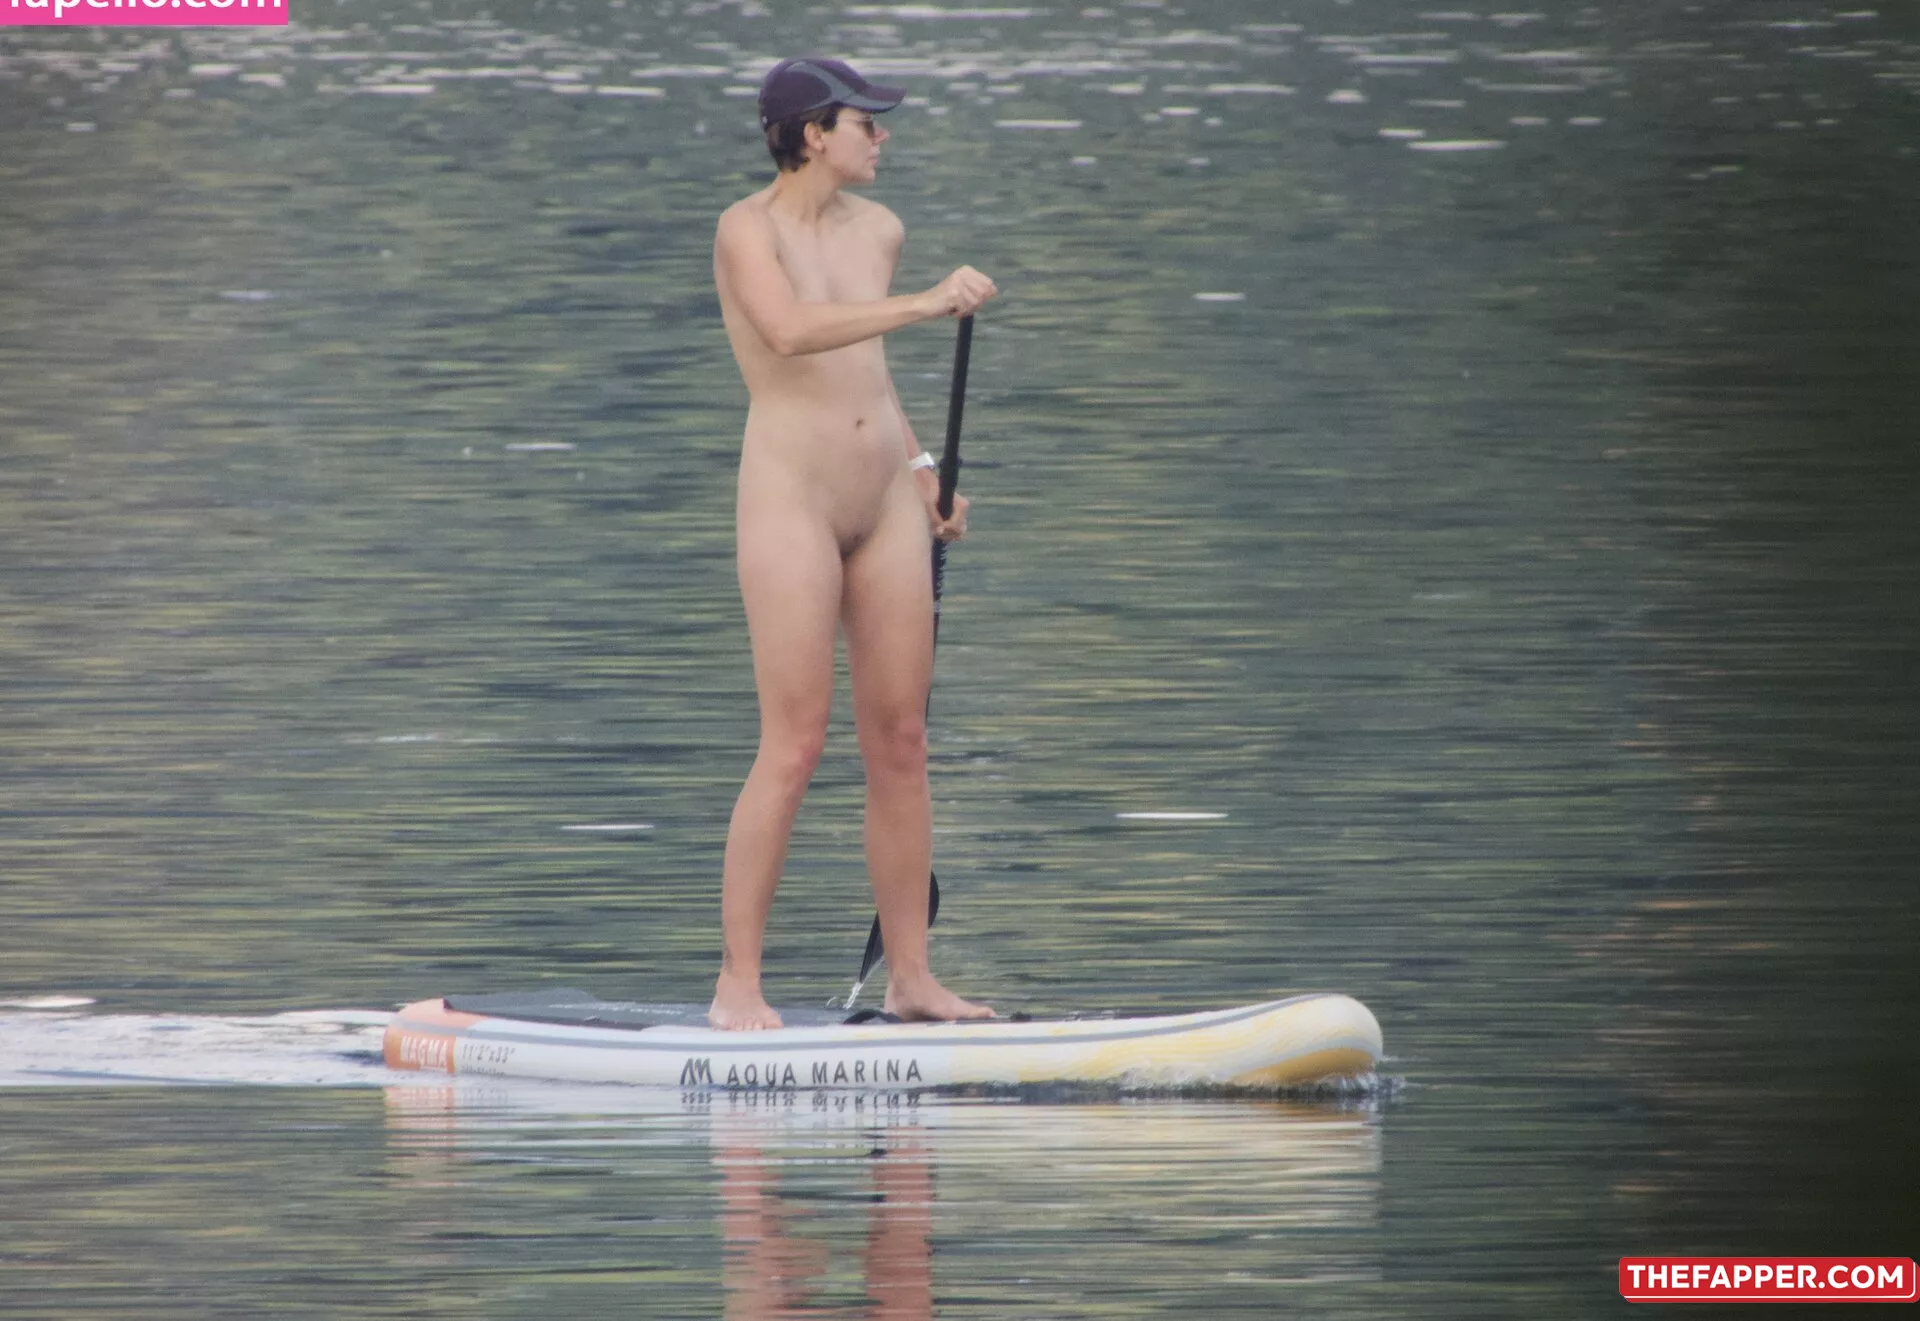 Amateur Voyeur  Onlyfans Leaked Nude Image #Q88qGvQ5Hs